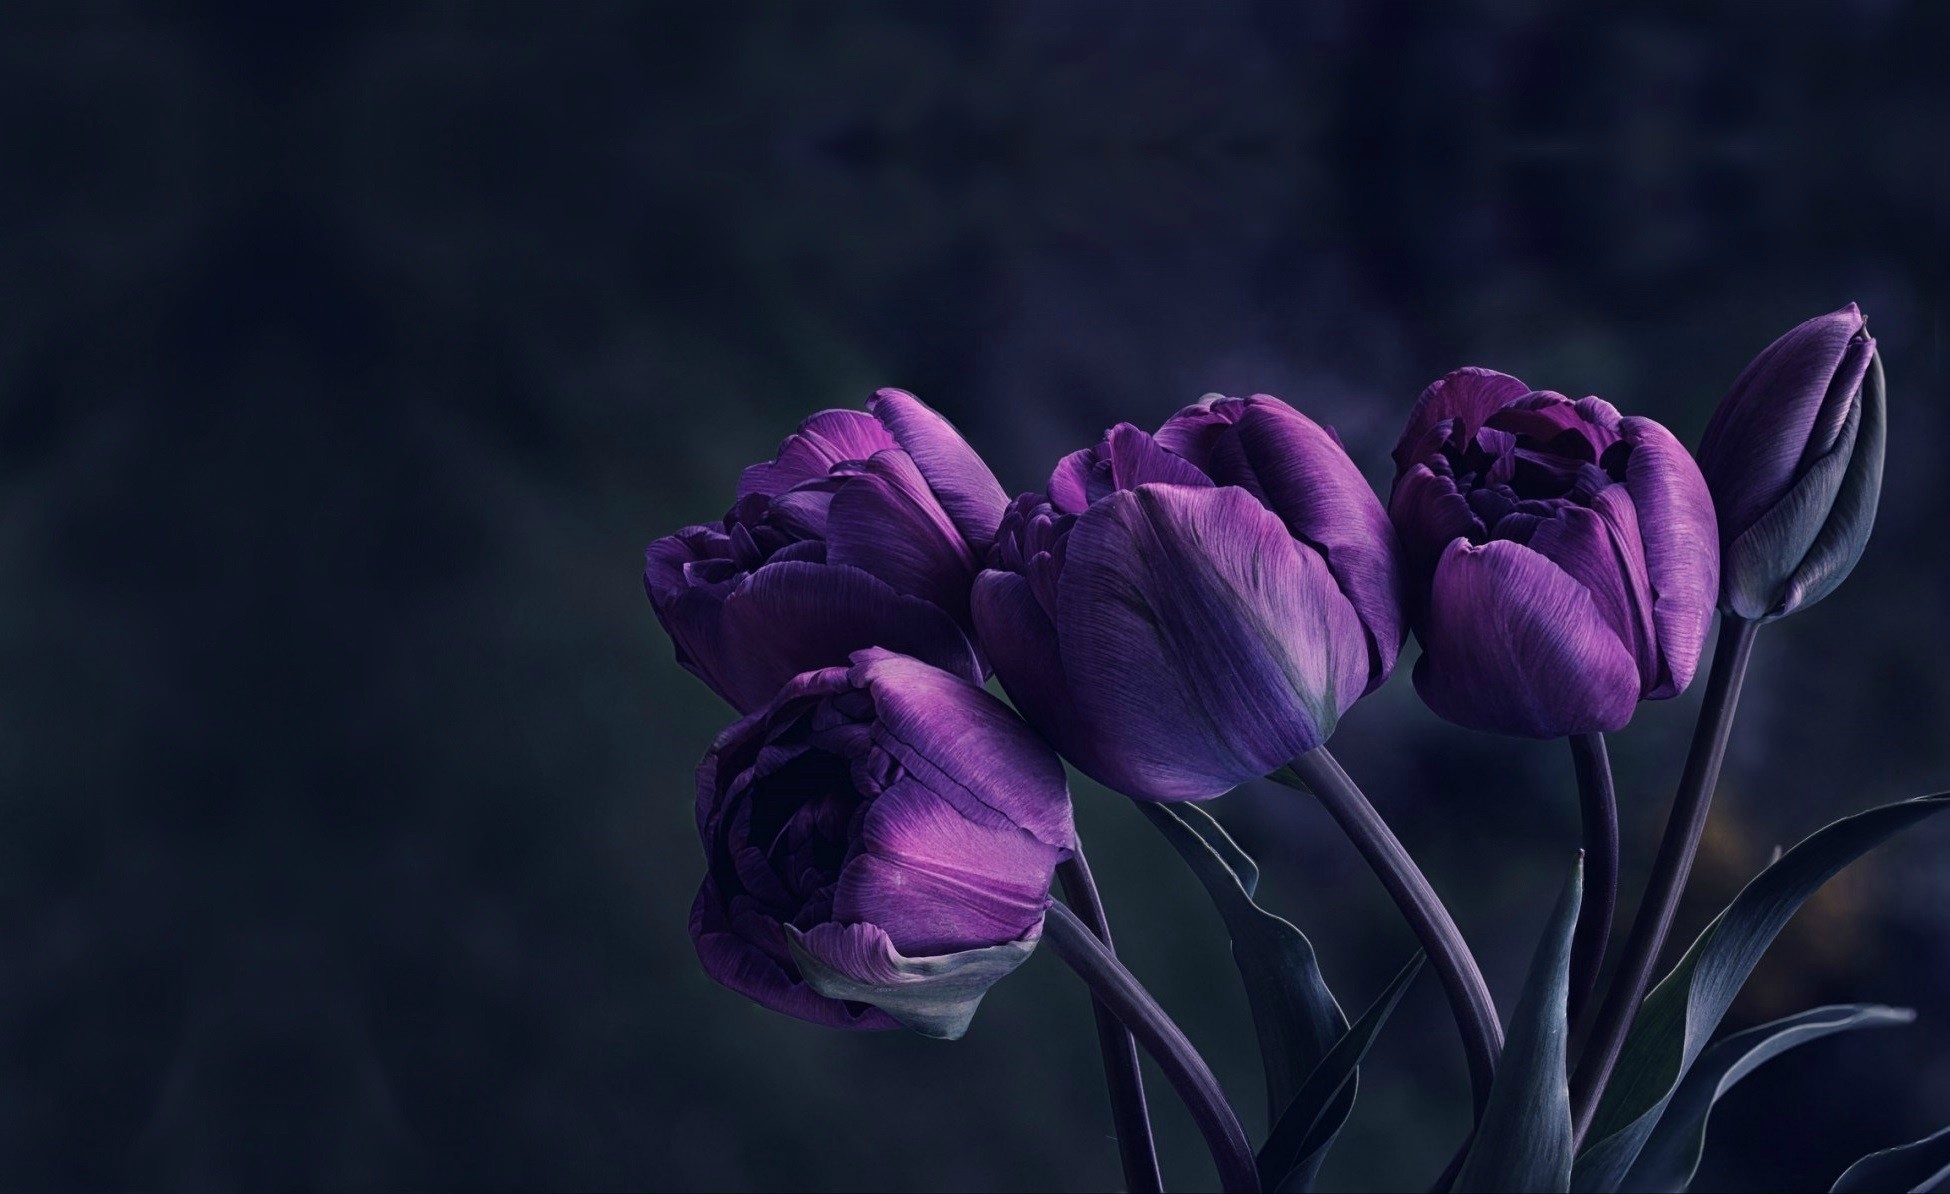  flowers  Velvet Tulips  Wallpapers  HD  Desktop  and Mobile 